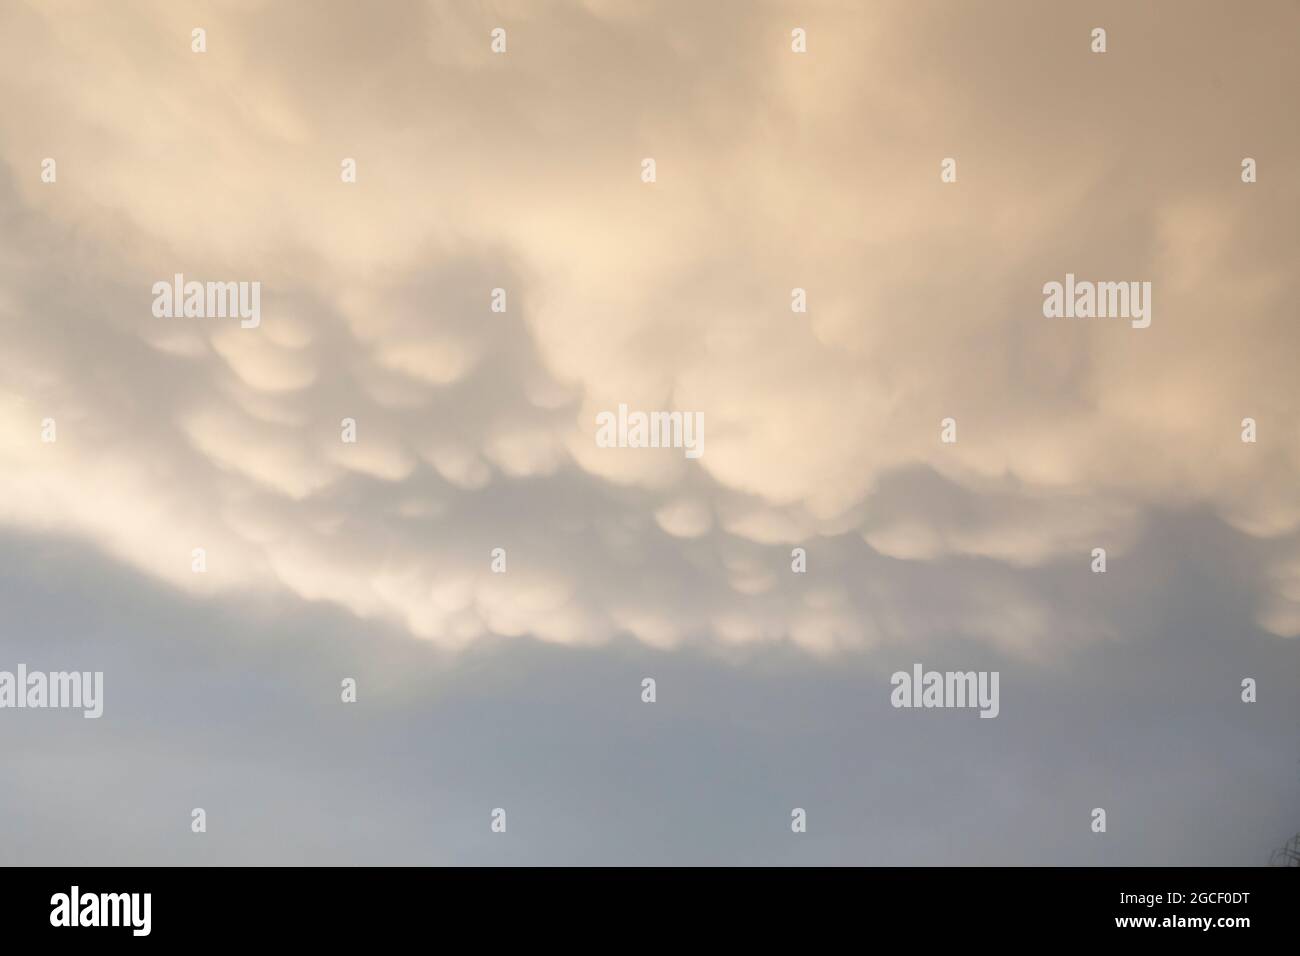 Mammatuswolken erzeugen einen vorhersehenden und dramatischen Blick am Nachmittags-Himmel. Perfekt für die Verwendung mit dem Photoshop Sky Replacement-Tool. Stockfoto